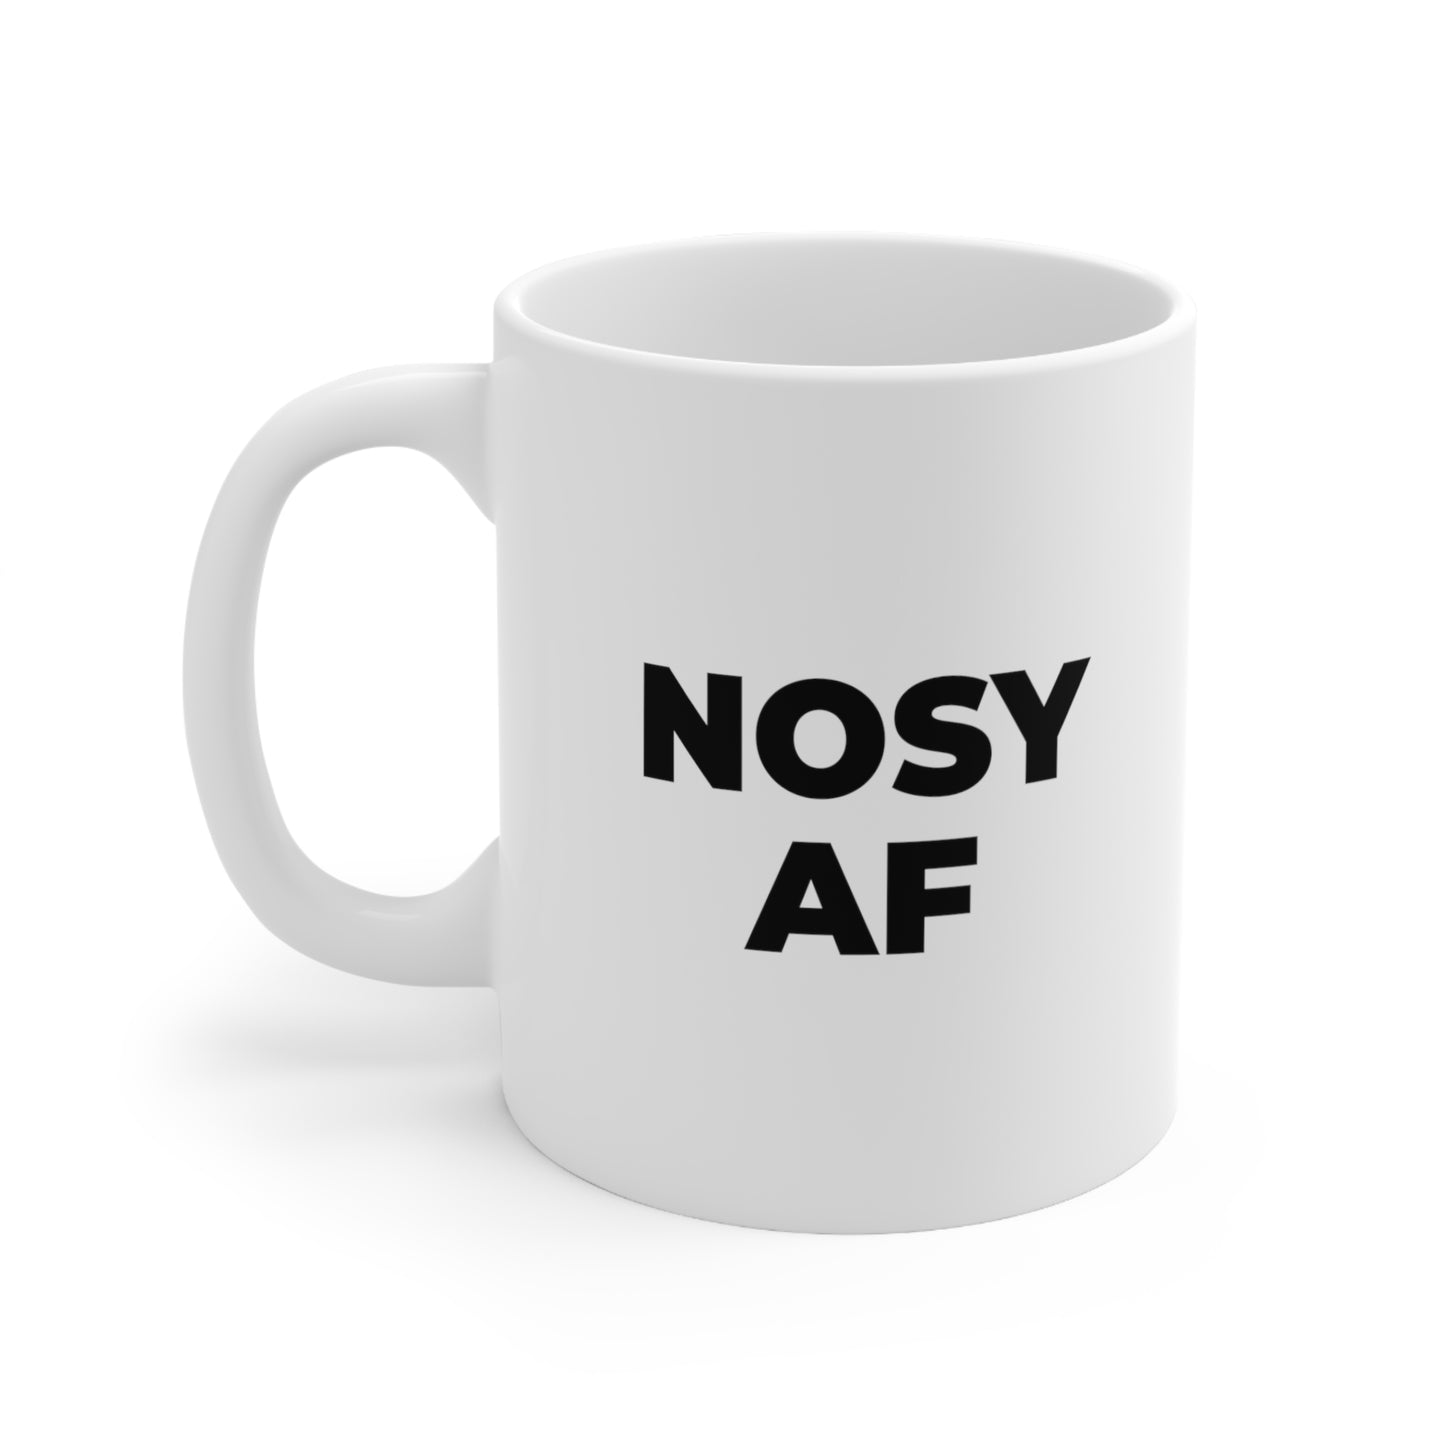 Nosy AF Coffee Mug